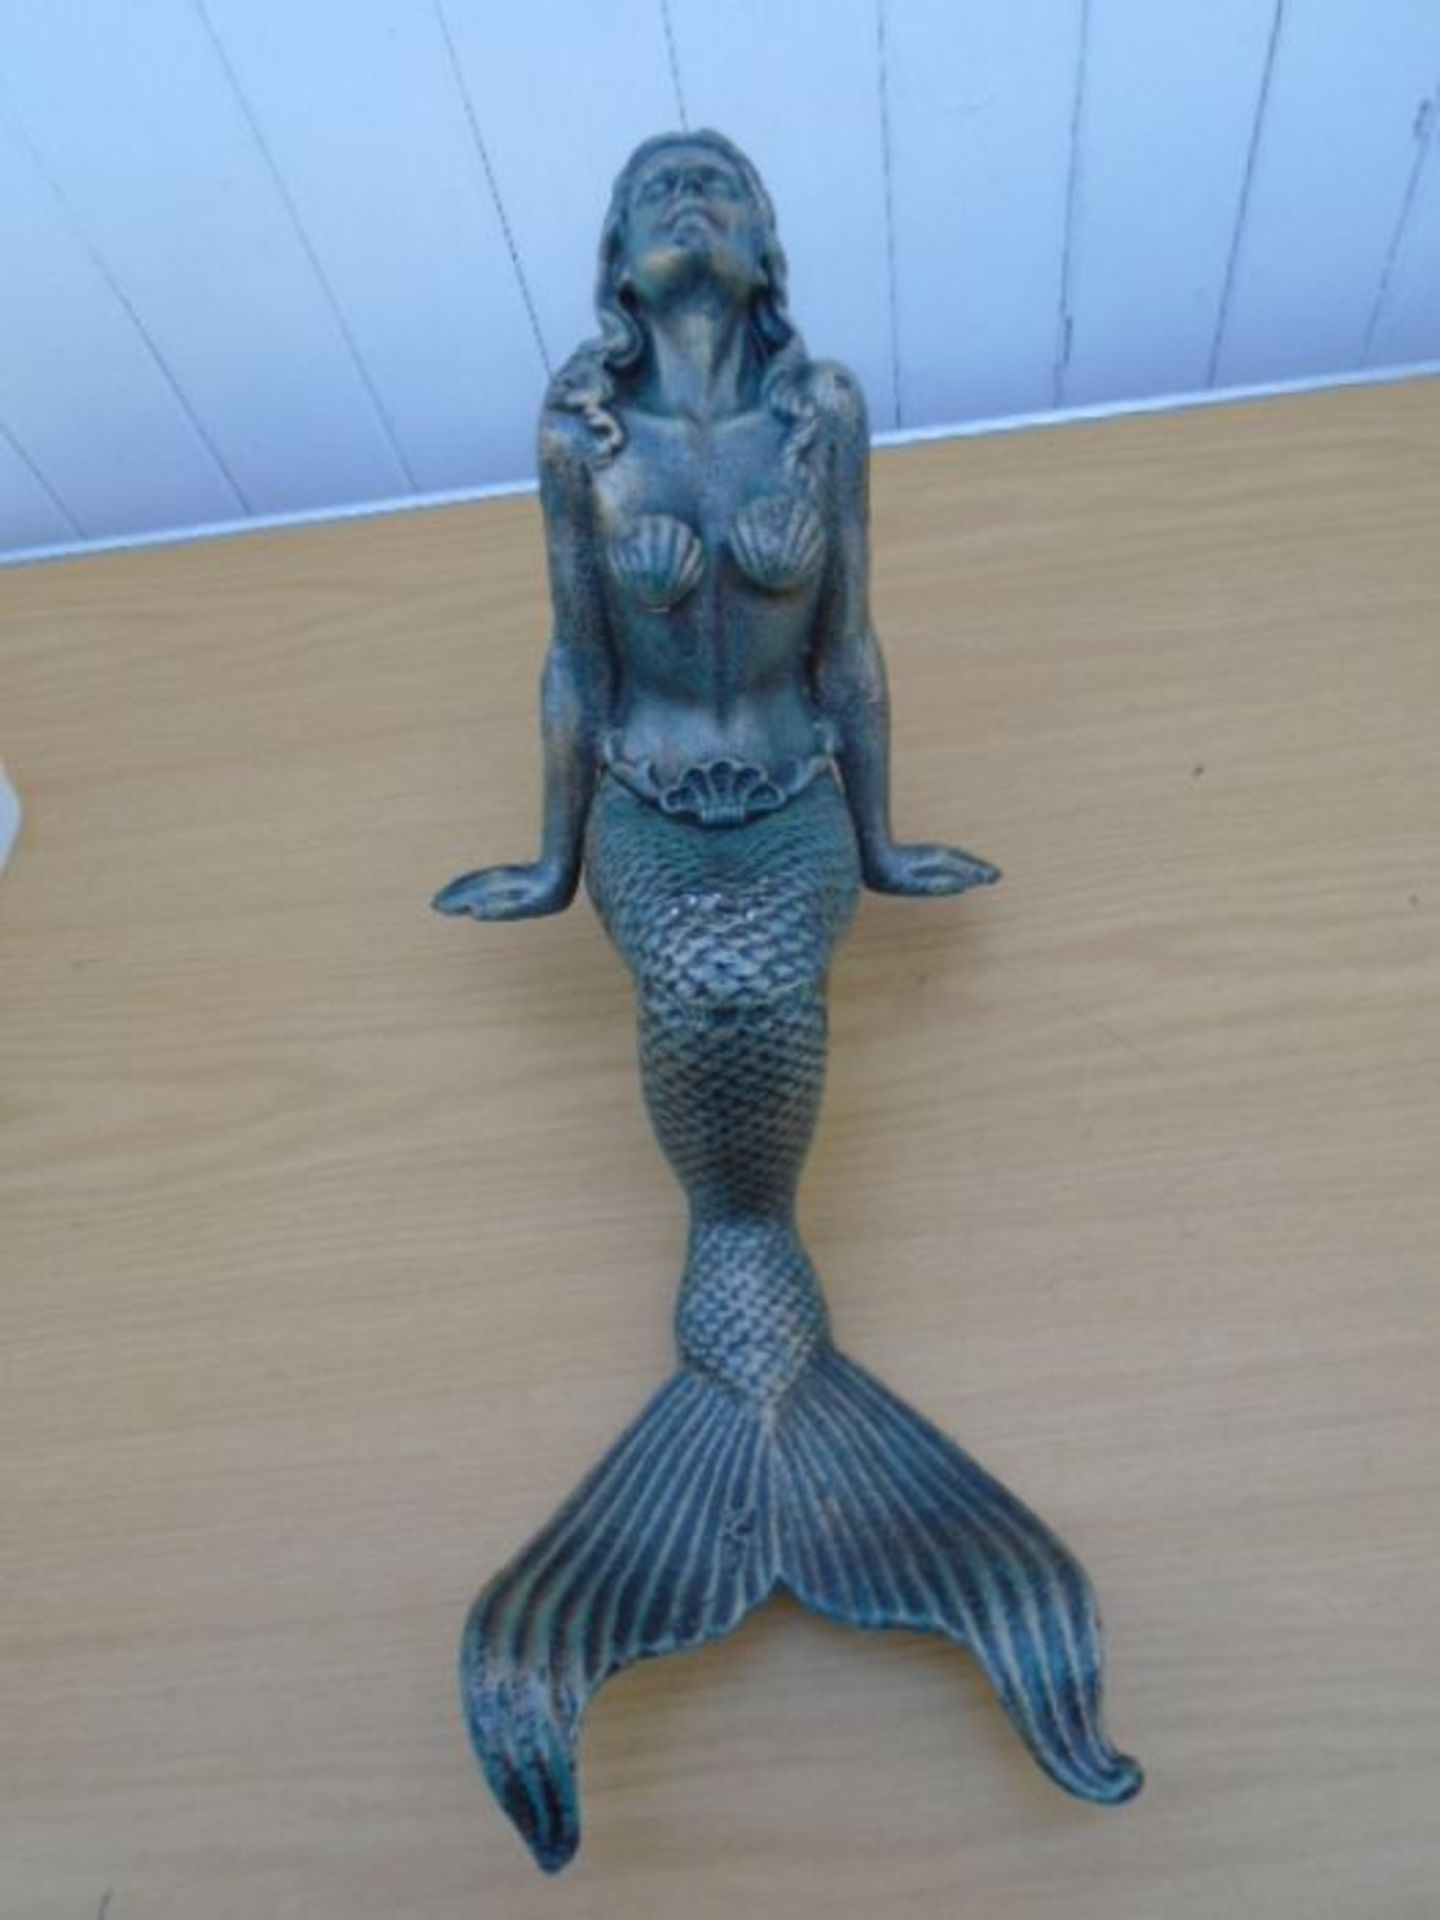 16"cast metal mermaid